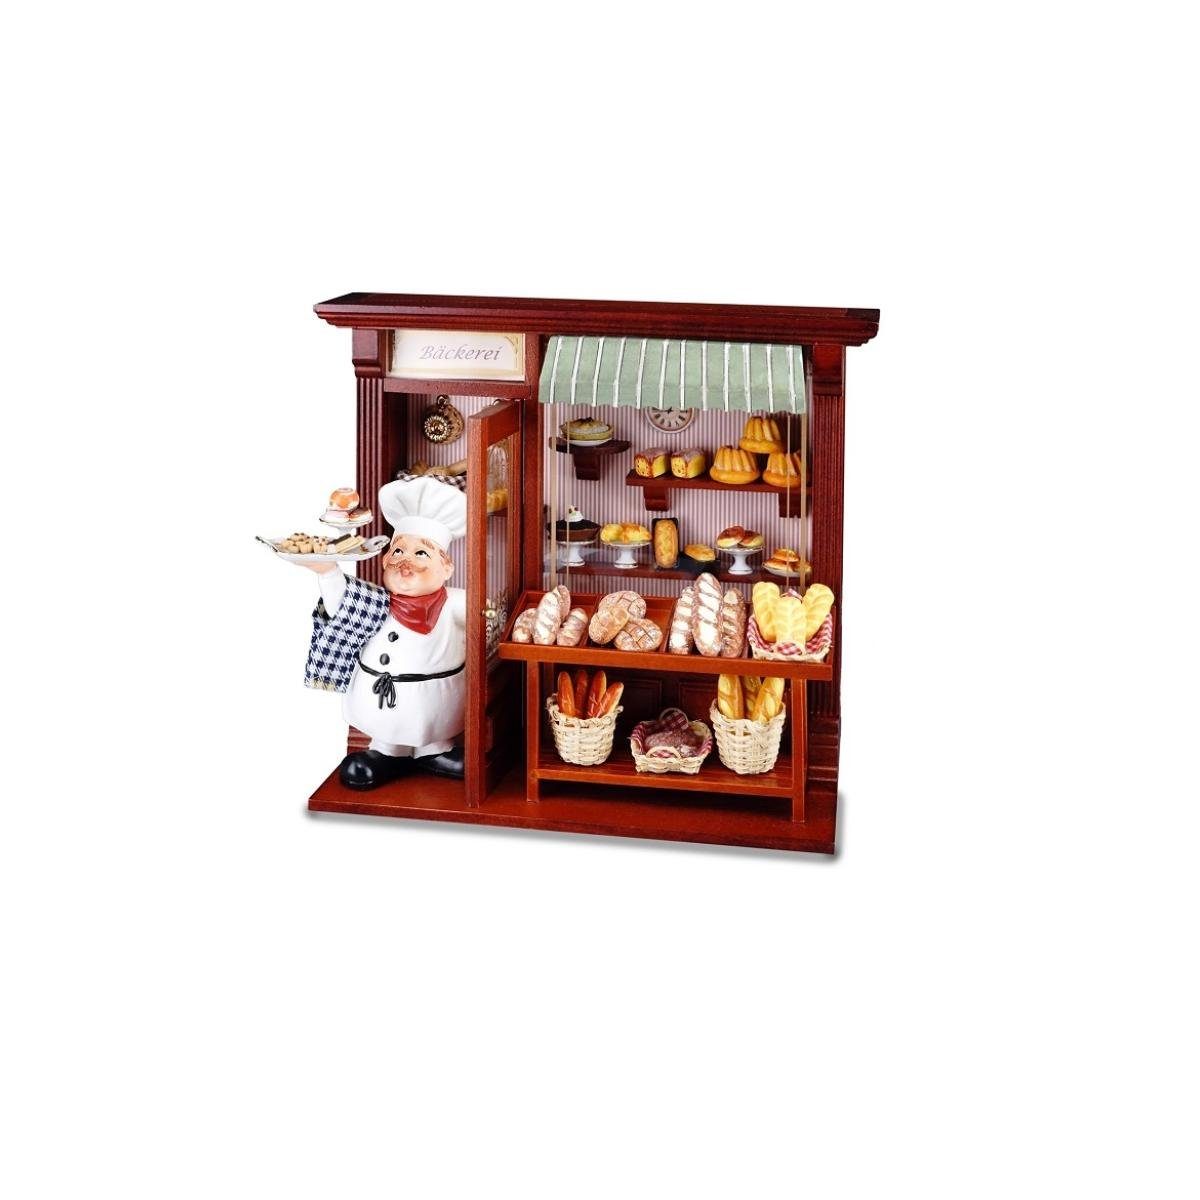 Reutter Porzellan Rahmen 001.794/5 - Bäckerei, Miniatur